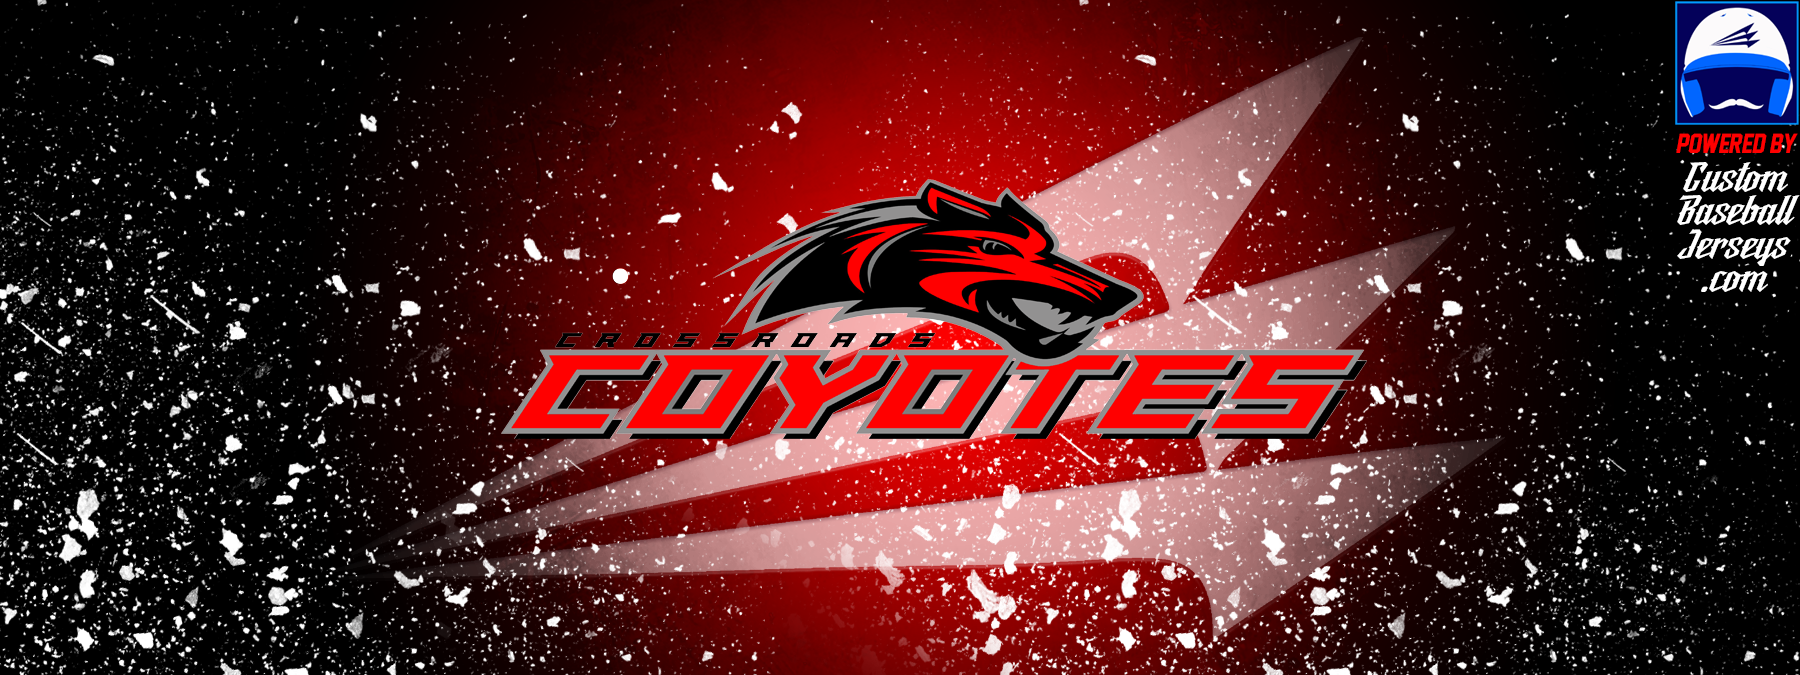 Coyotes Custom Camo Baseball Jerseys - Triton Mockup Portal